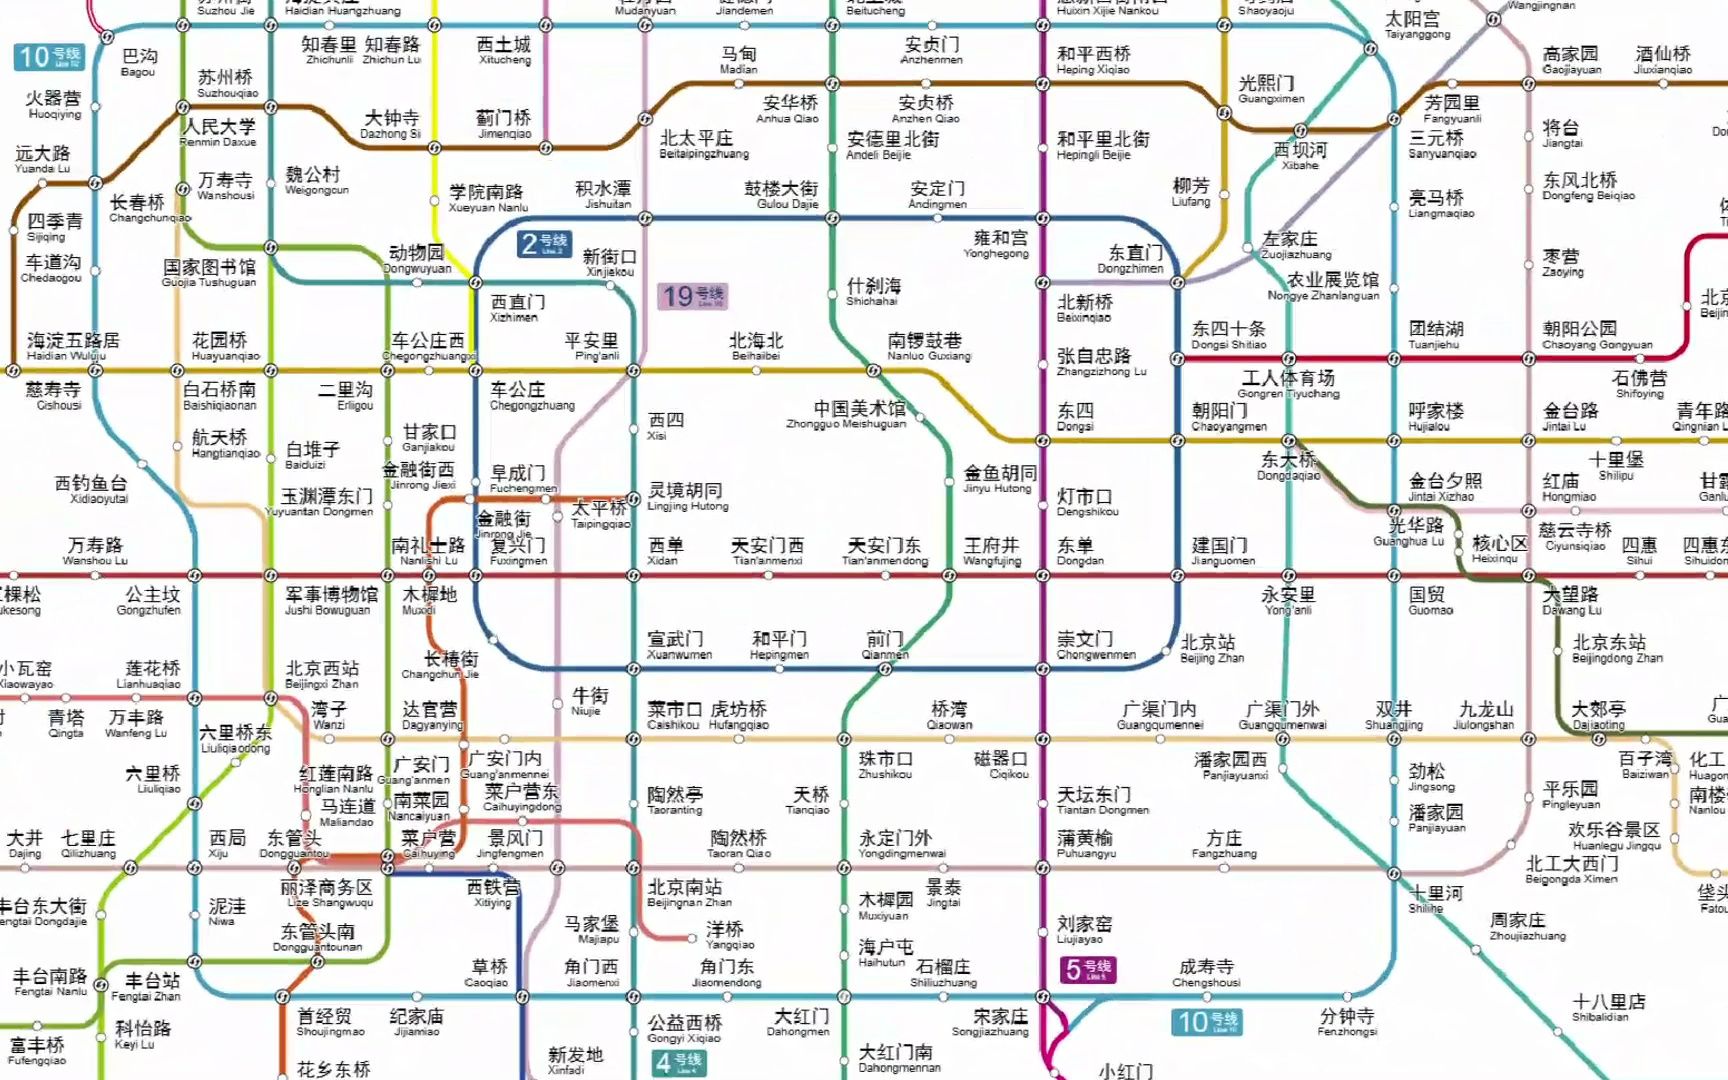 北京地铁远期规划(1969